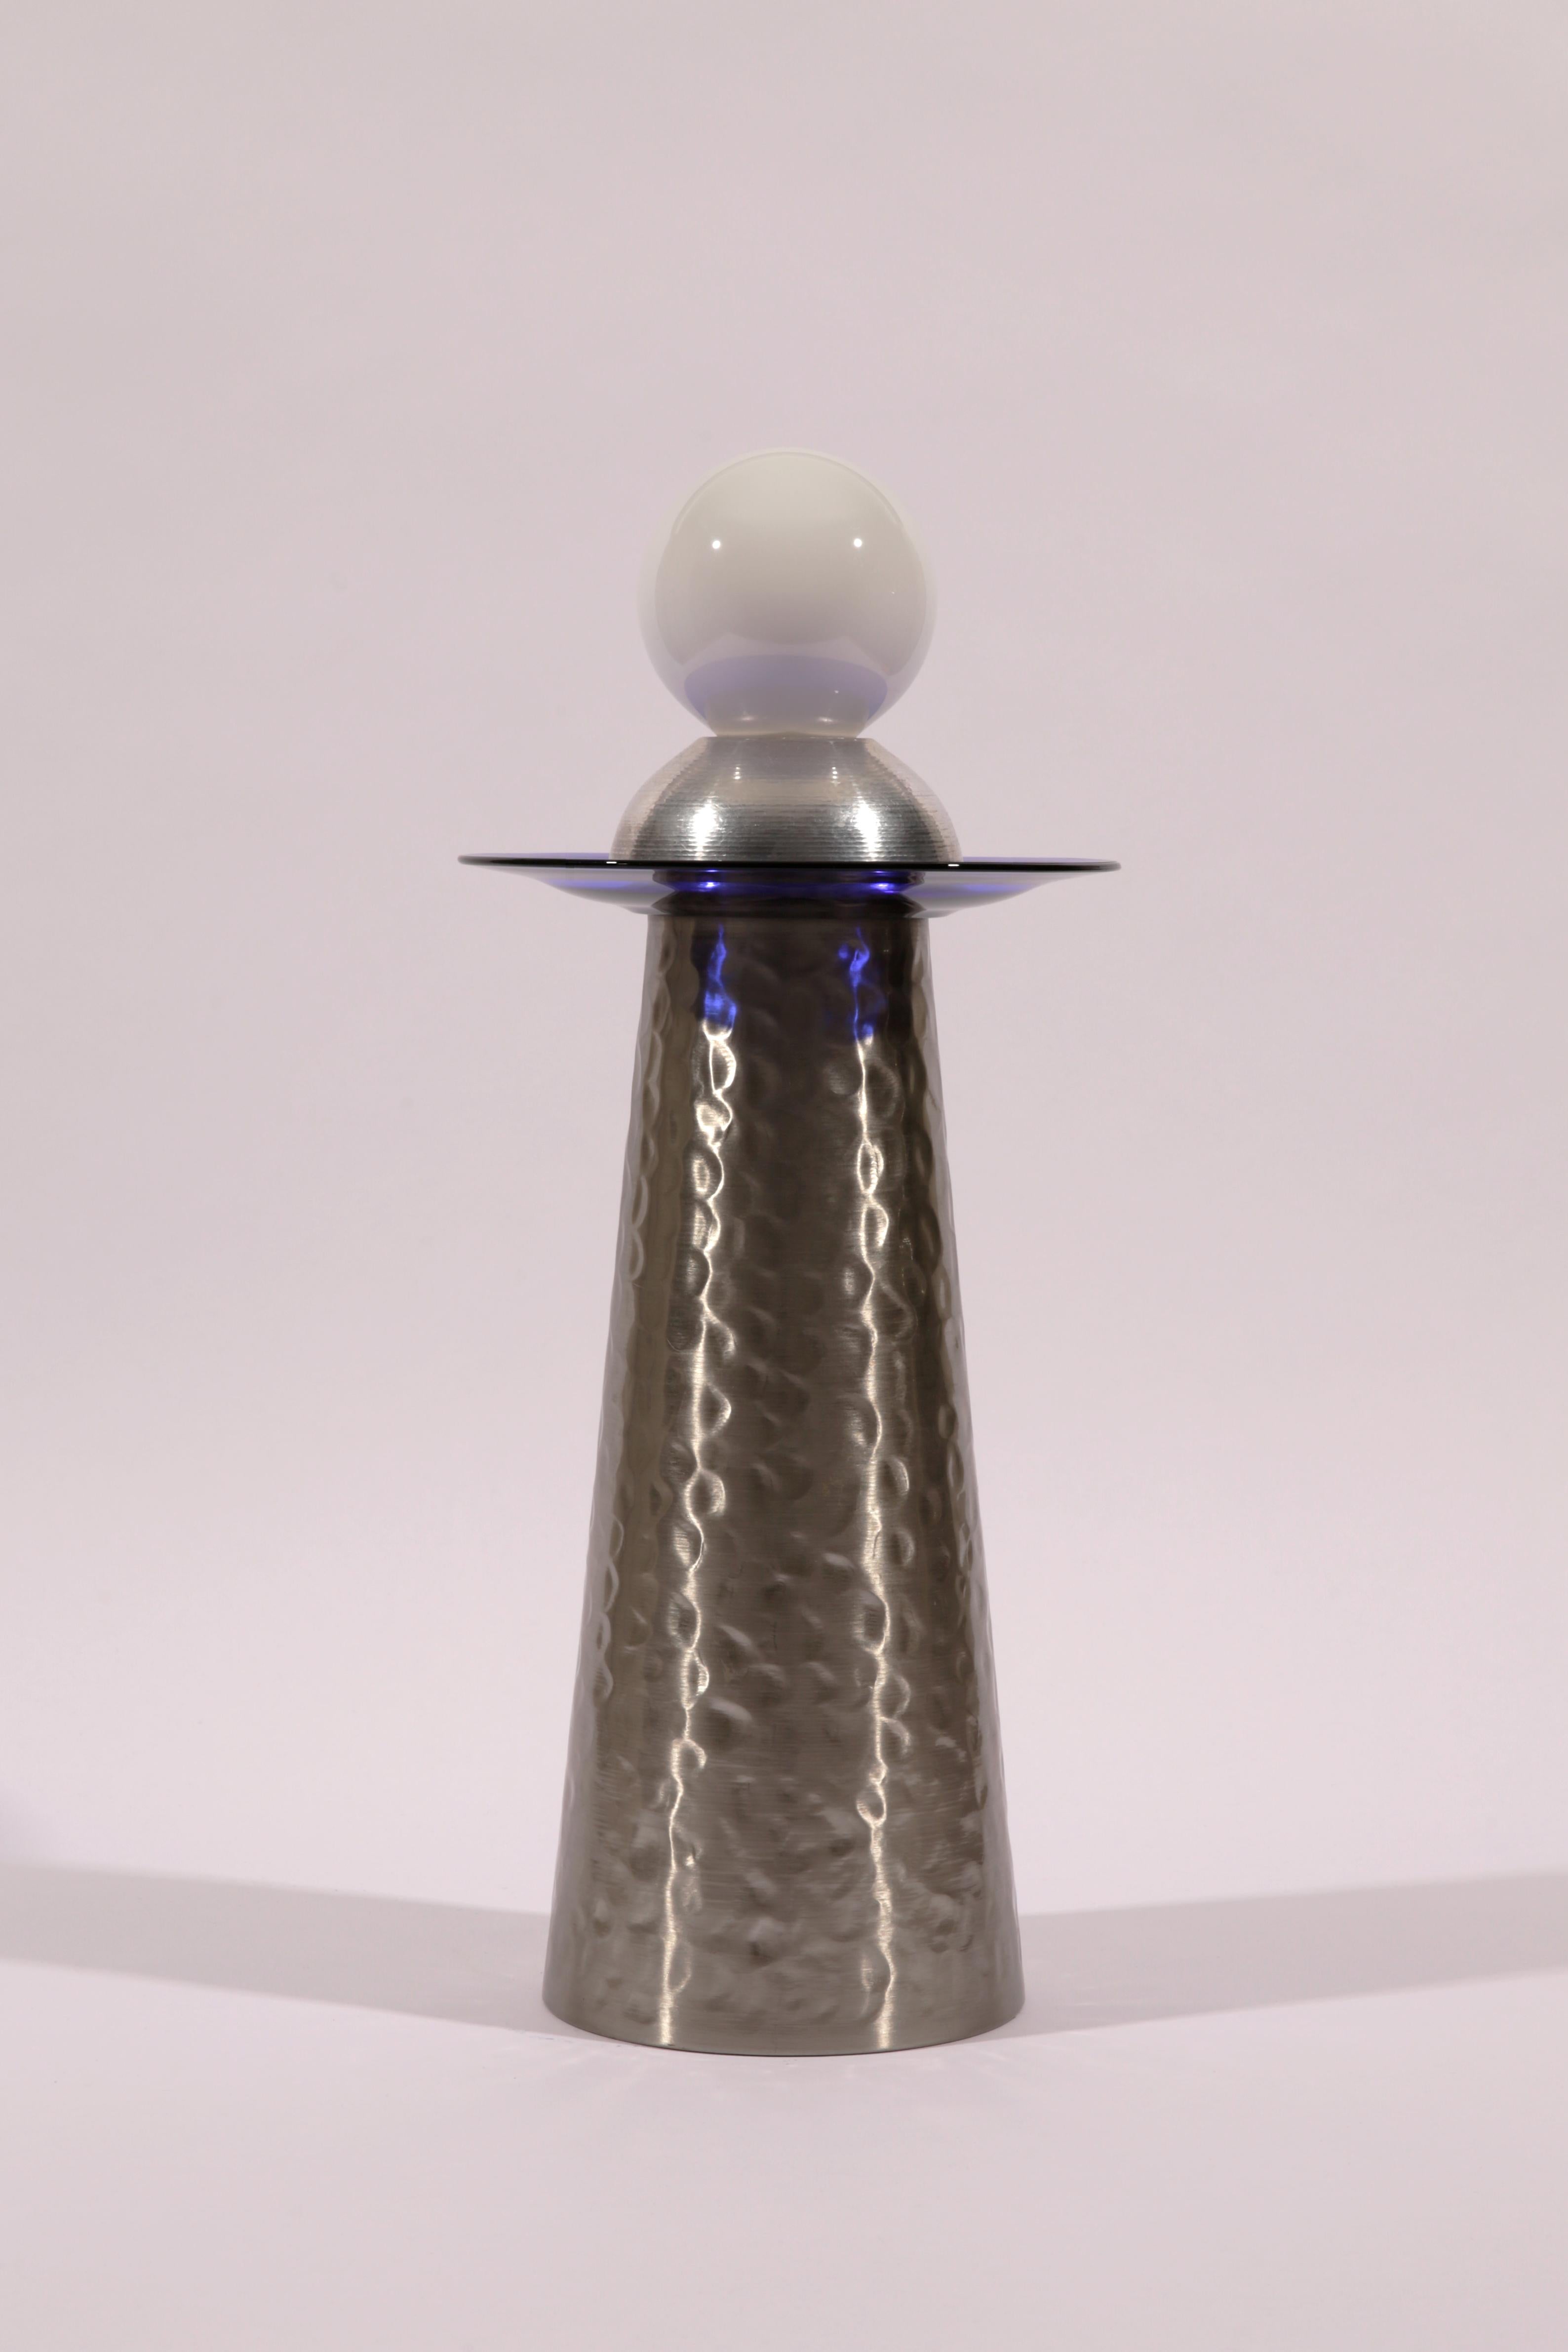 The Shape of Things to Come 2 est une lampe de table ou de sol inspirée par l'ère spatiale. Son apparence élégante et futuriste est obtenue grâce à l'utilisation d'aluminium et de verre bleu, ainsi que d'une grande ampoule à gradation non couverte.